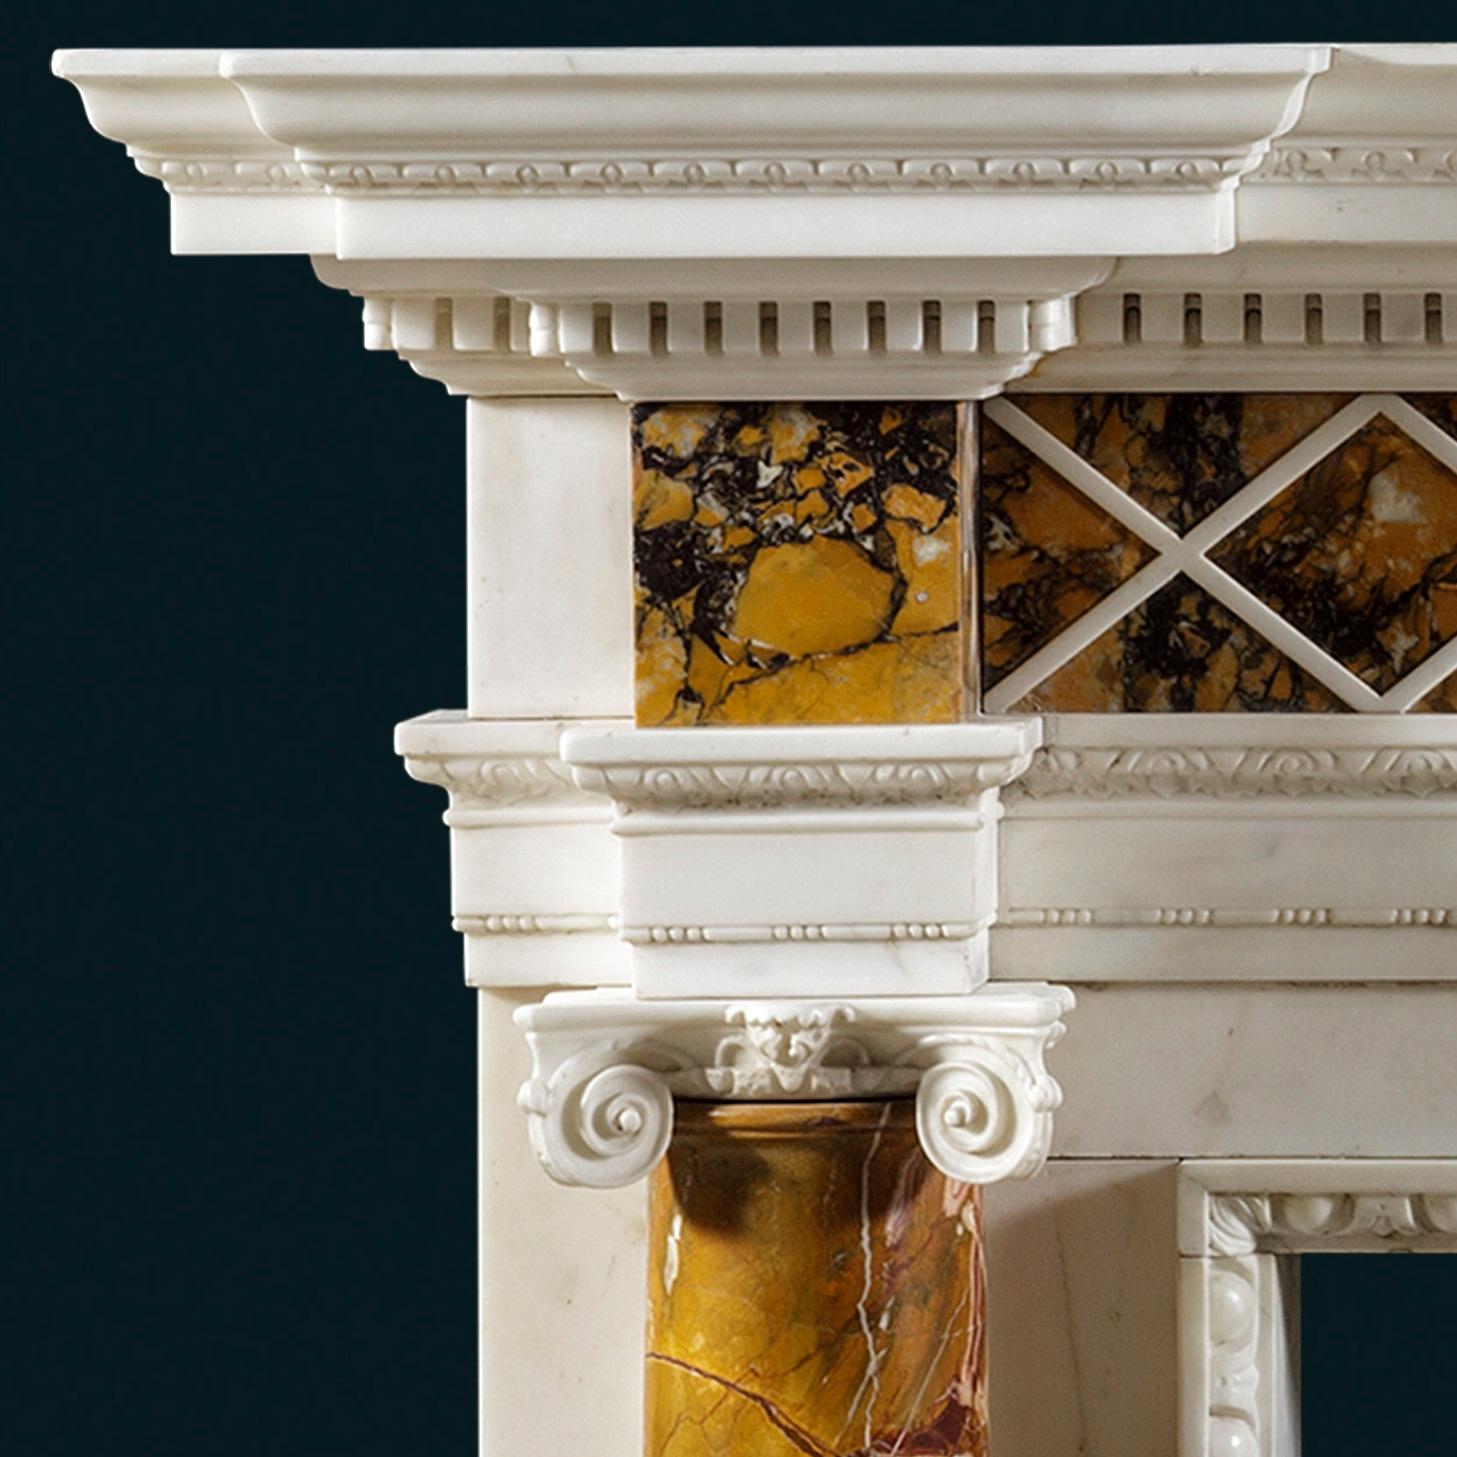 Cheminée de style George III en marbre statuaire, sienne et jaspe, avec une grande tablette centrale bien sculptée représentant la Vertu et le Vice, vers 1765.
L'étagère à étages en façade est ornée de moulures à décor de feuillages et de